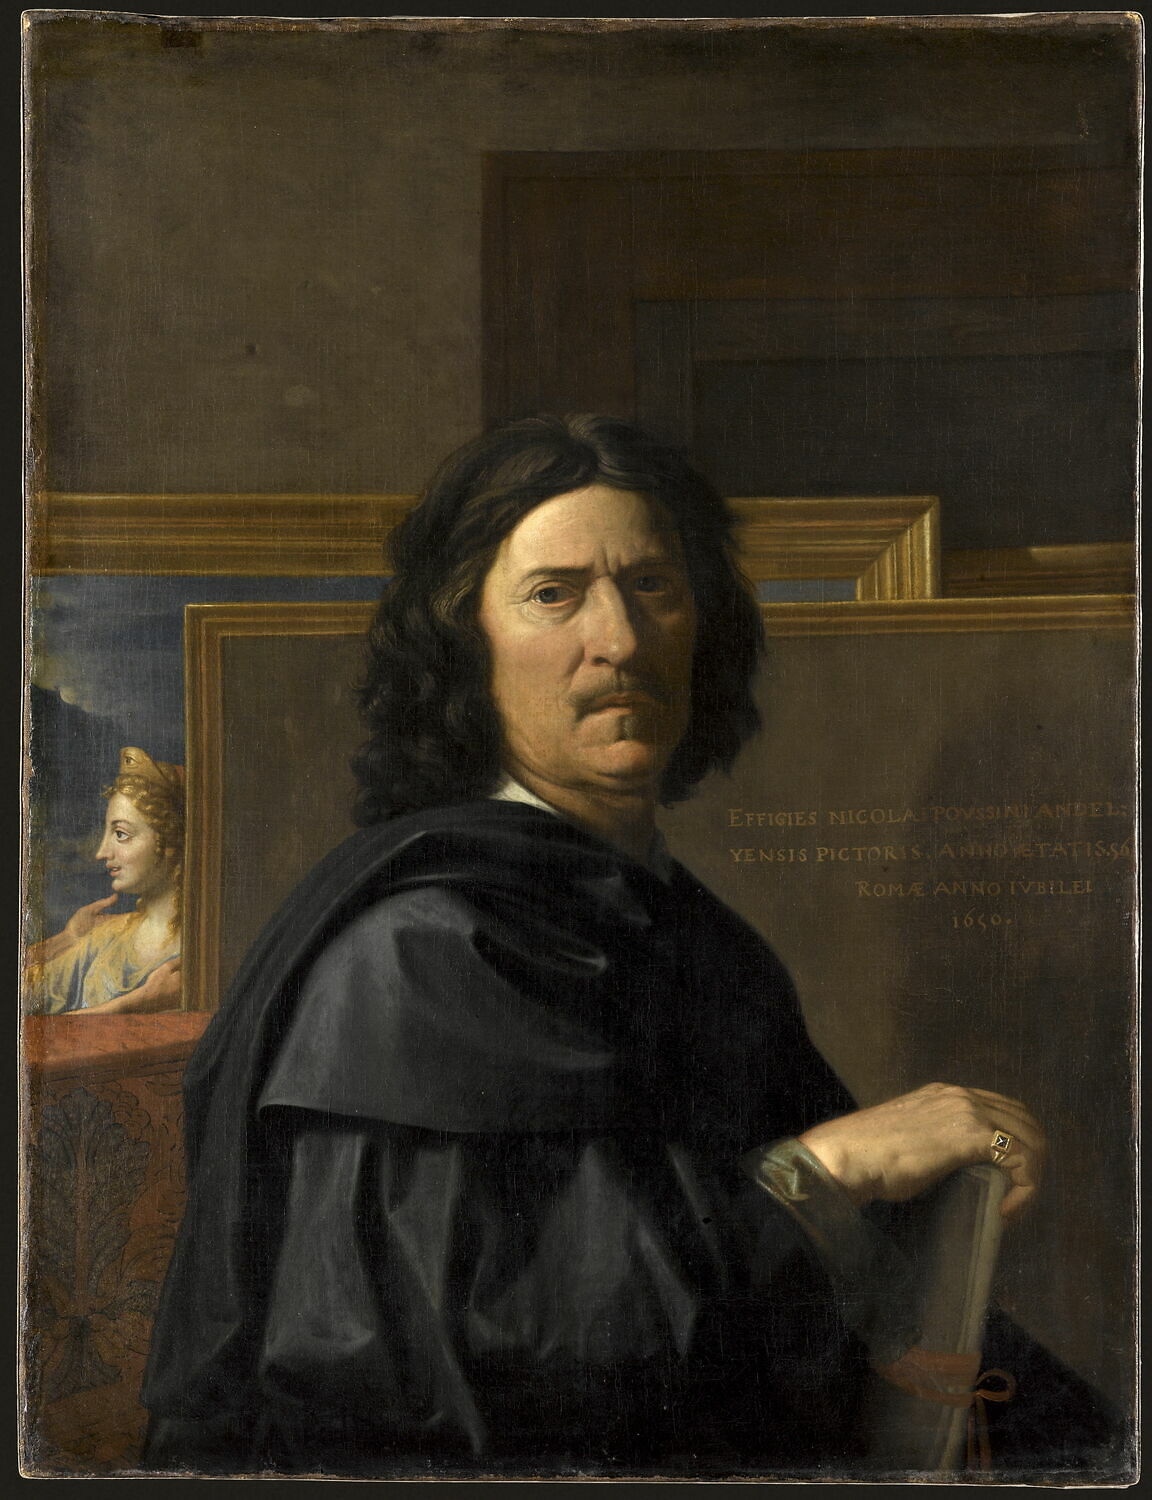 [[Self-portrait]] by Nicolas Poussin, 1650